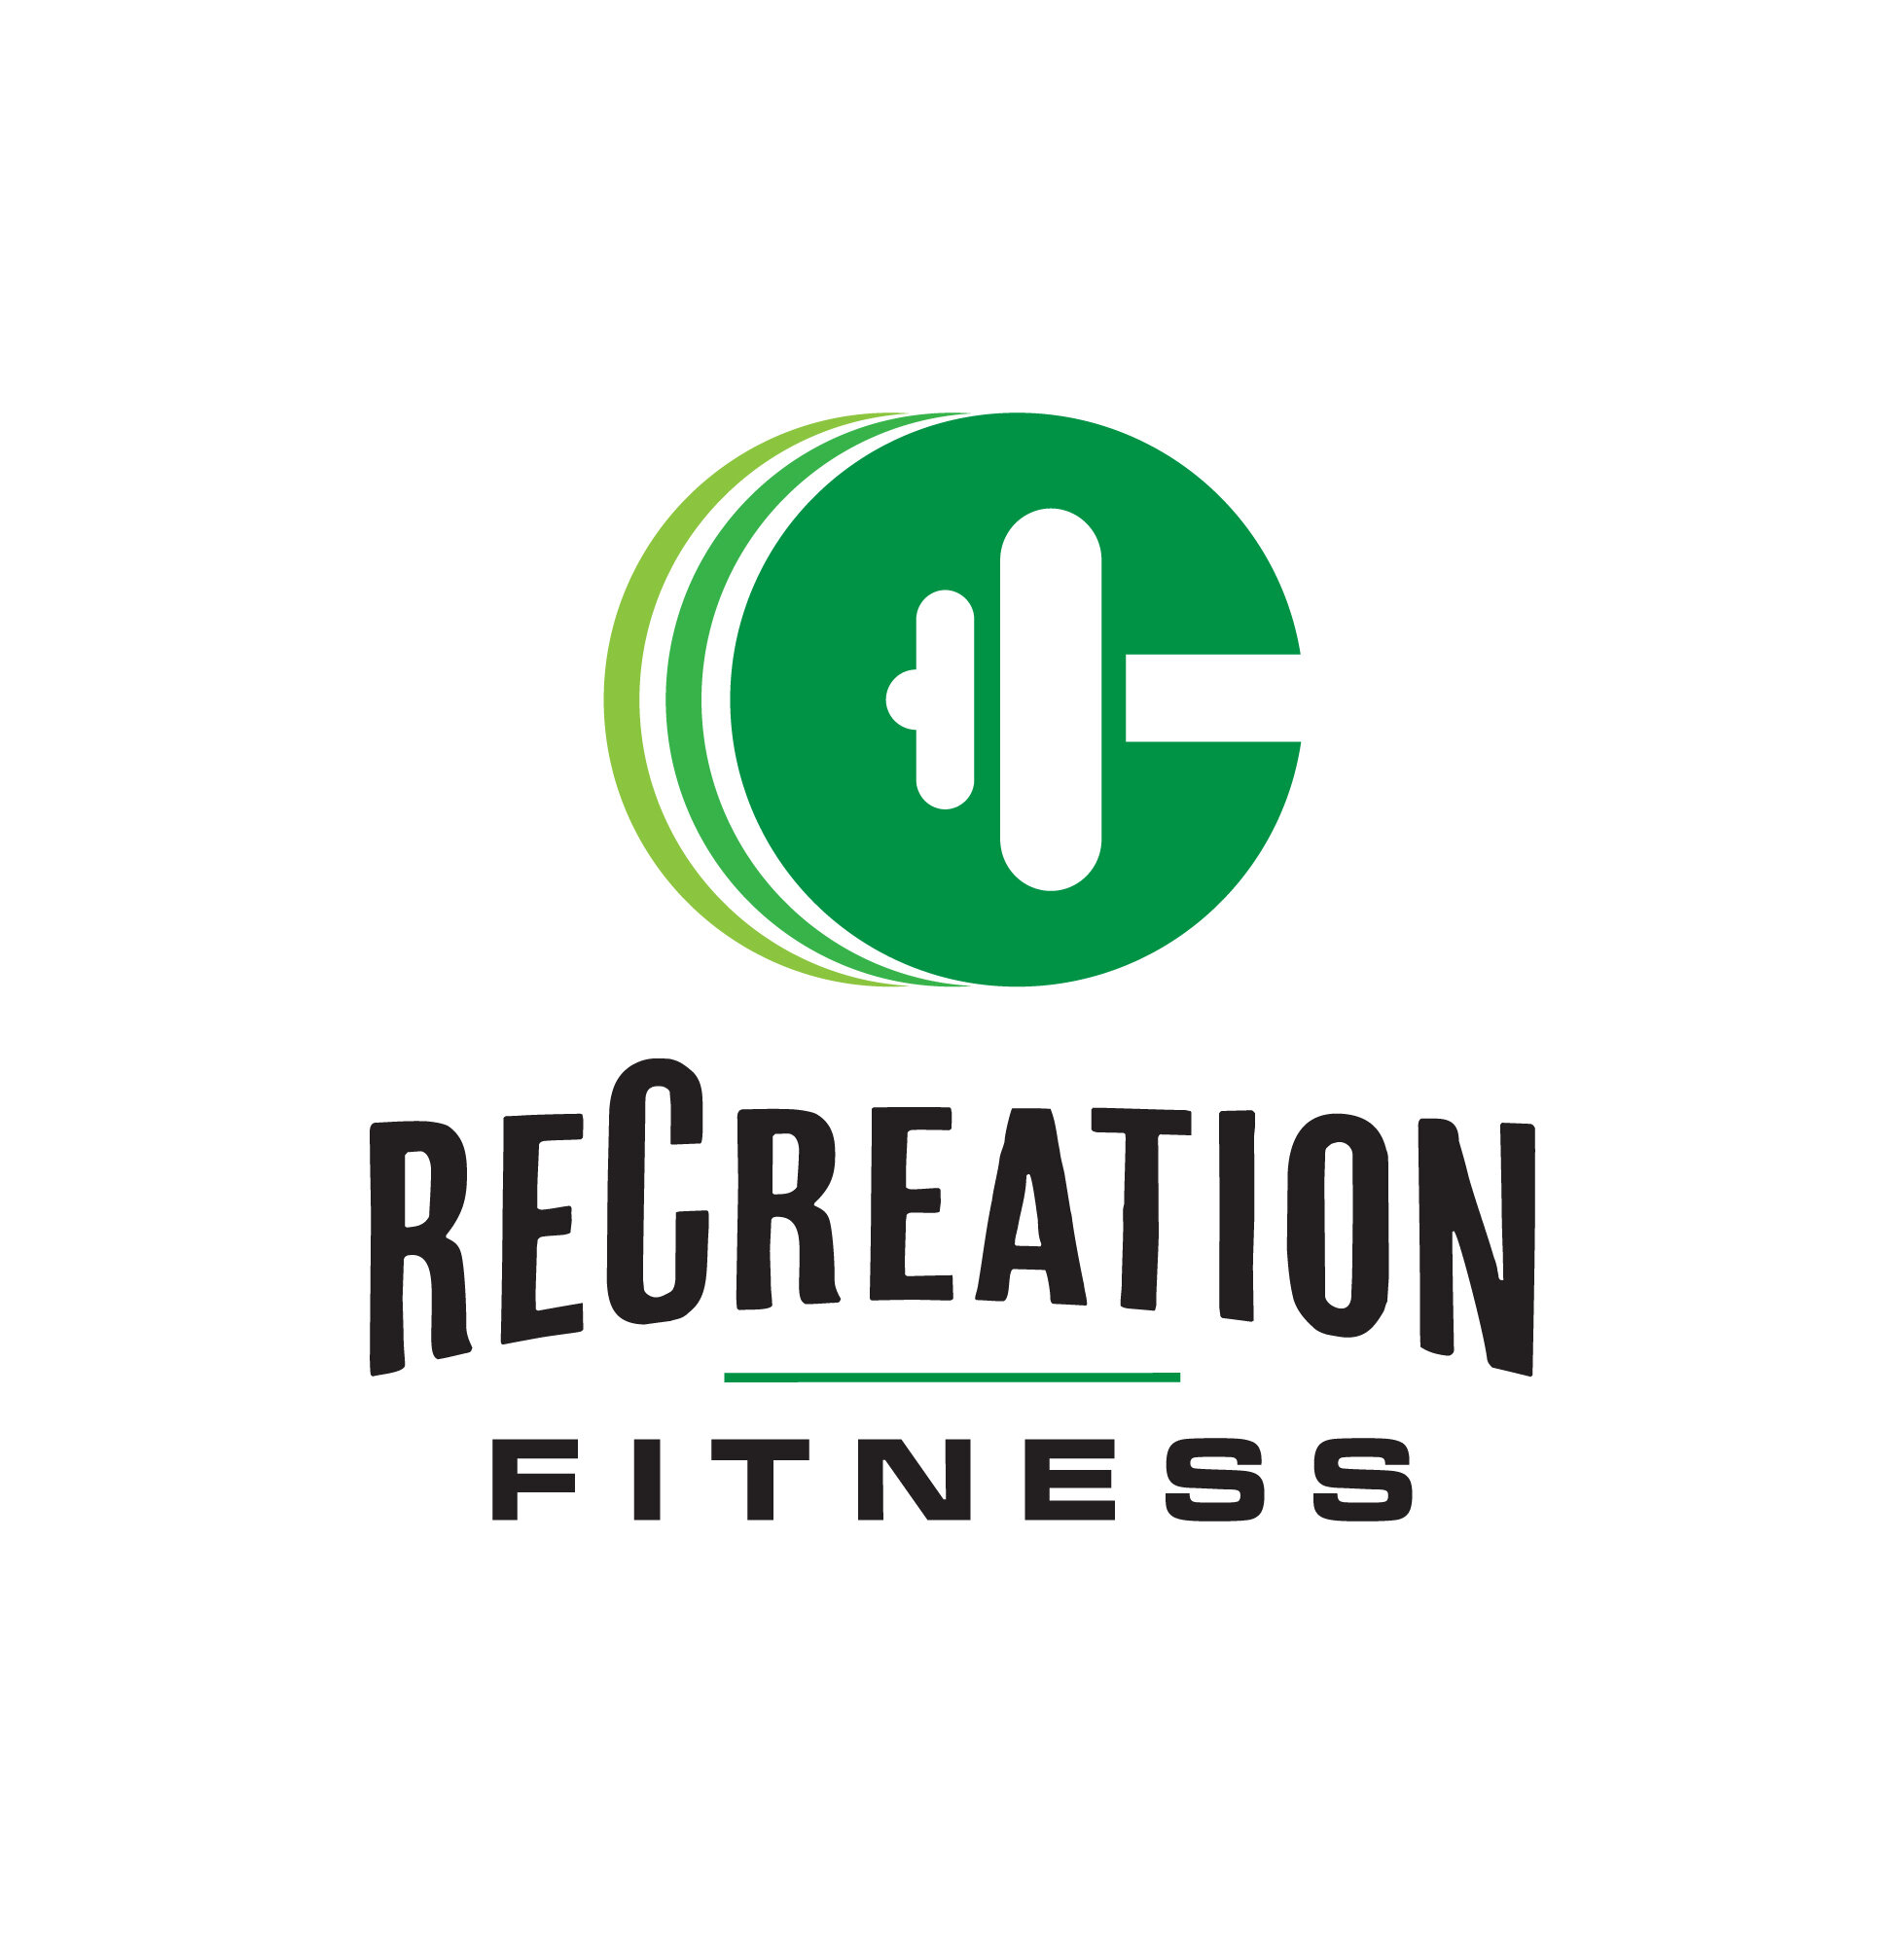 recreation_fitness-01.jpg